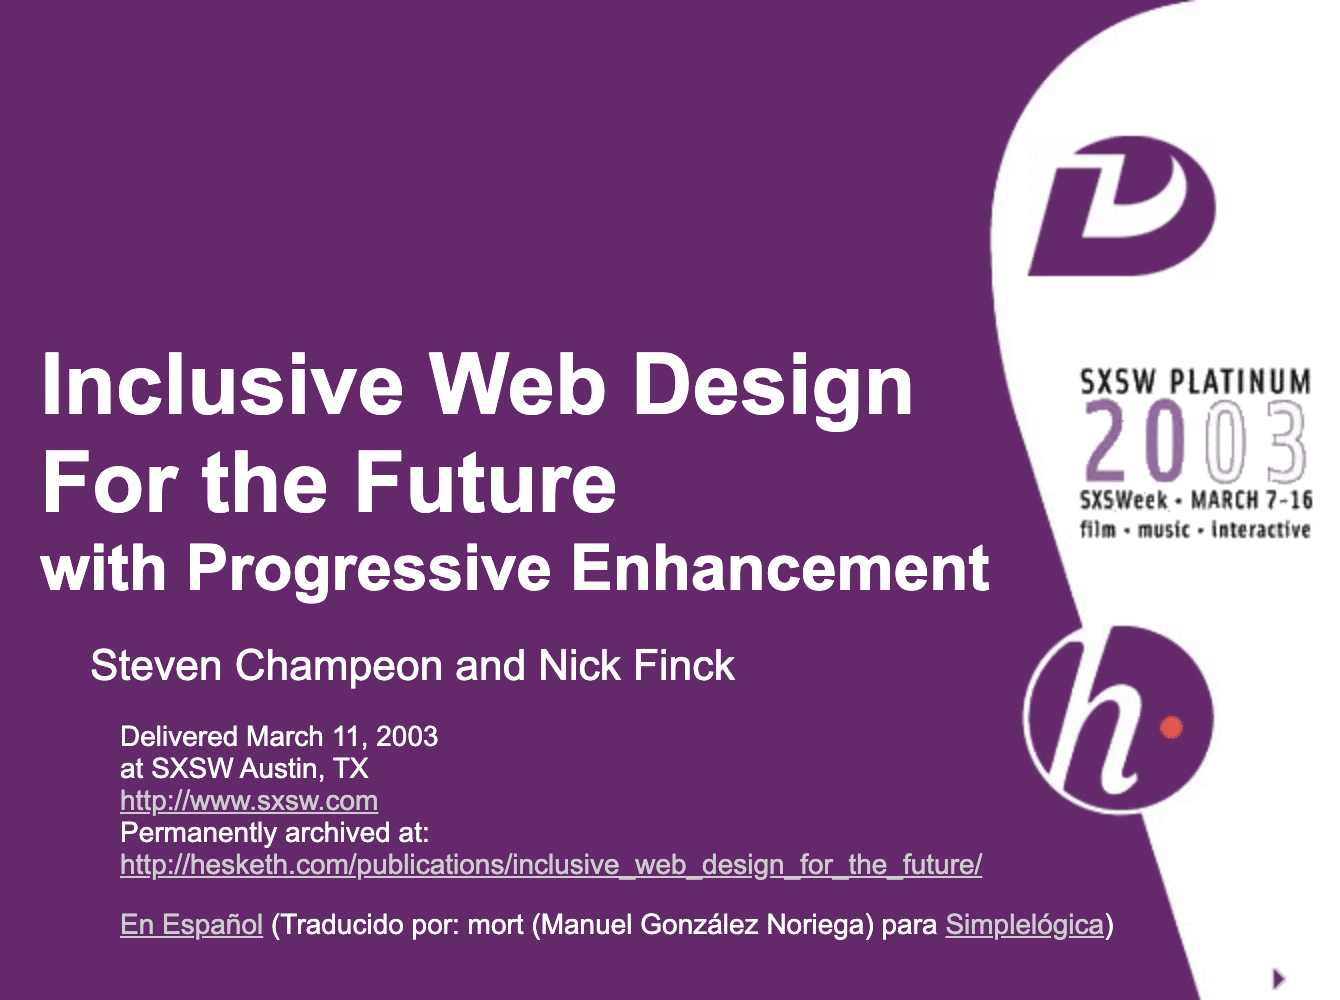 점진적인 개선을 통해 미래에 대비하는 포용적인 웹 디자인 Finck와 Champeon의 원본 프레젠테이션의 제목 슬라이드입니다.